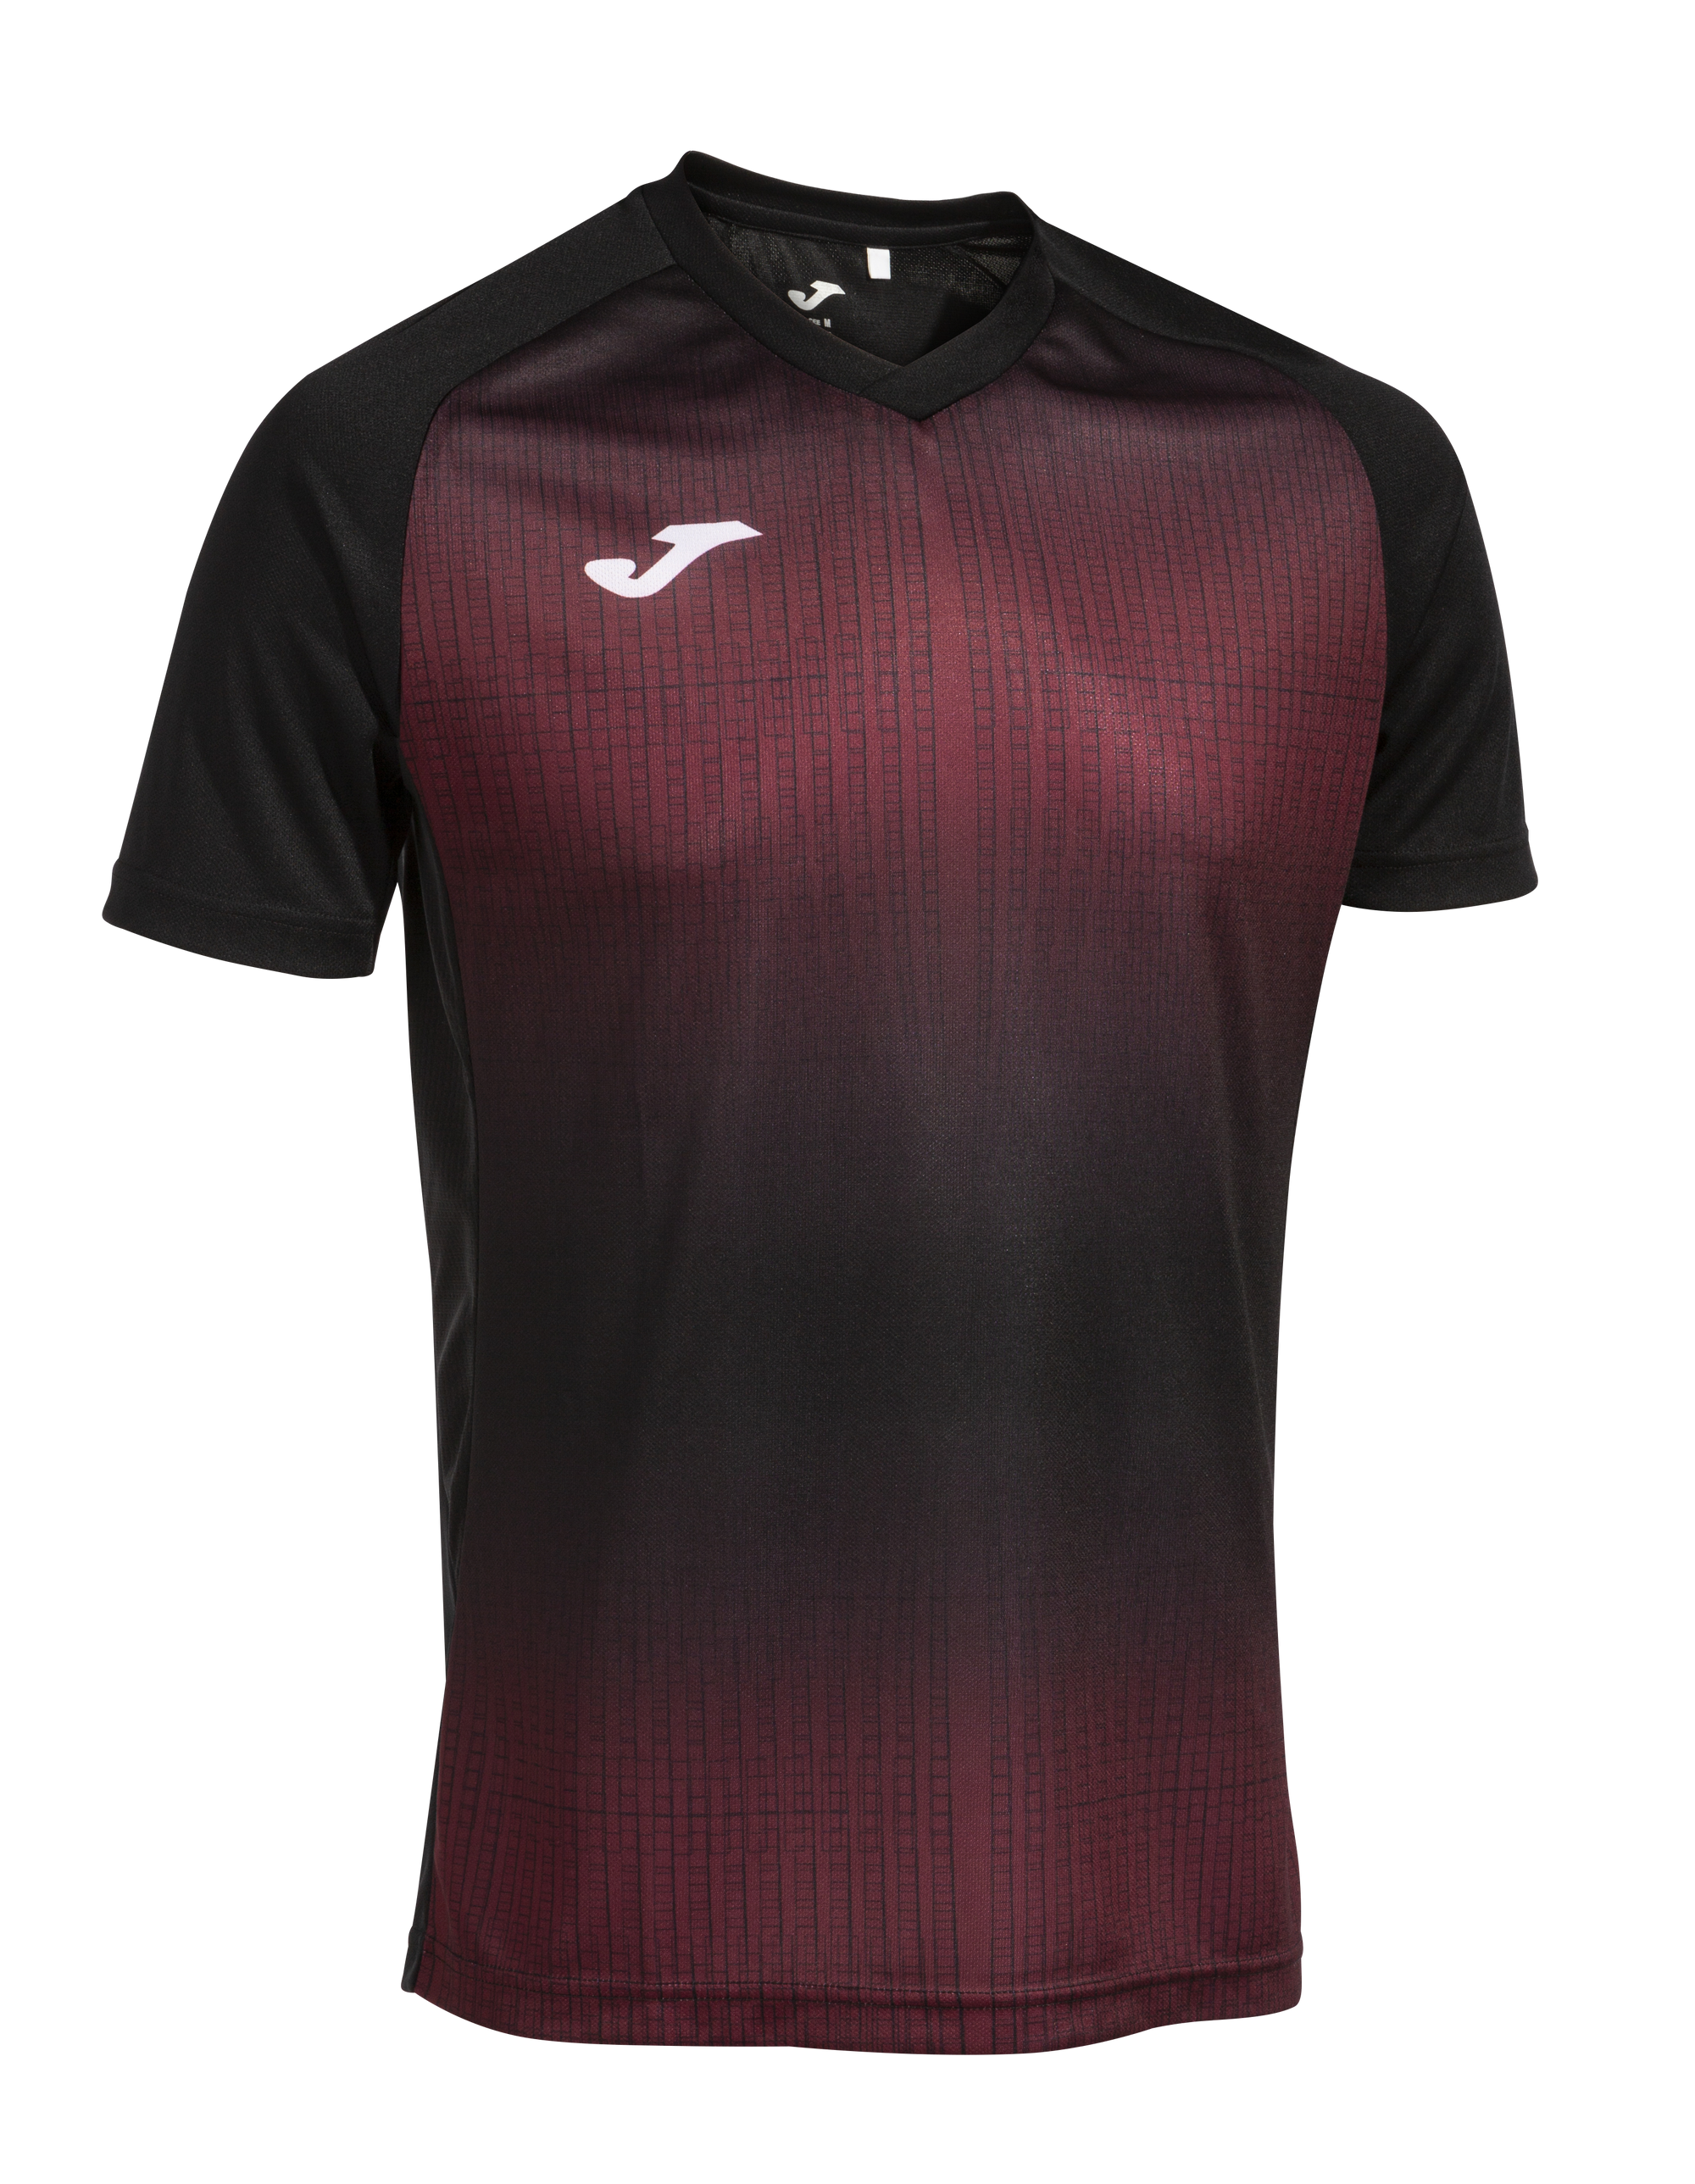 Joma Tiger V Short Sleeve T-Shirt - Black/Ruby